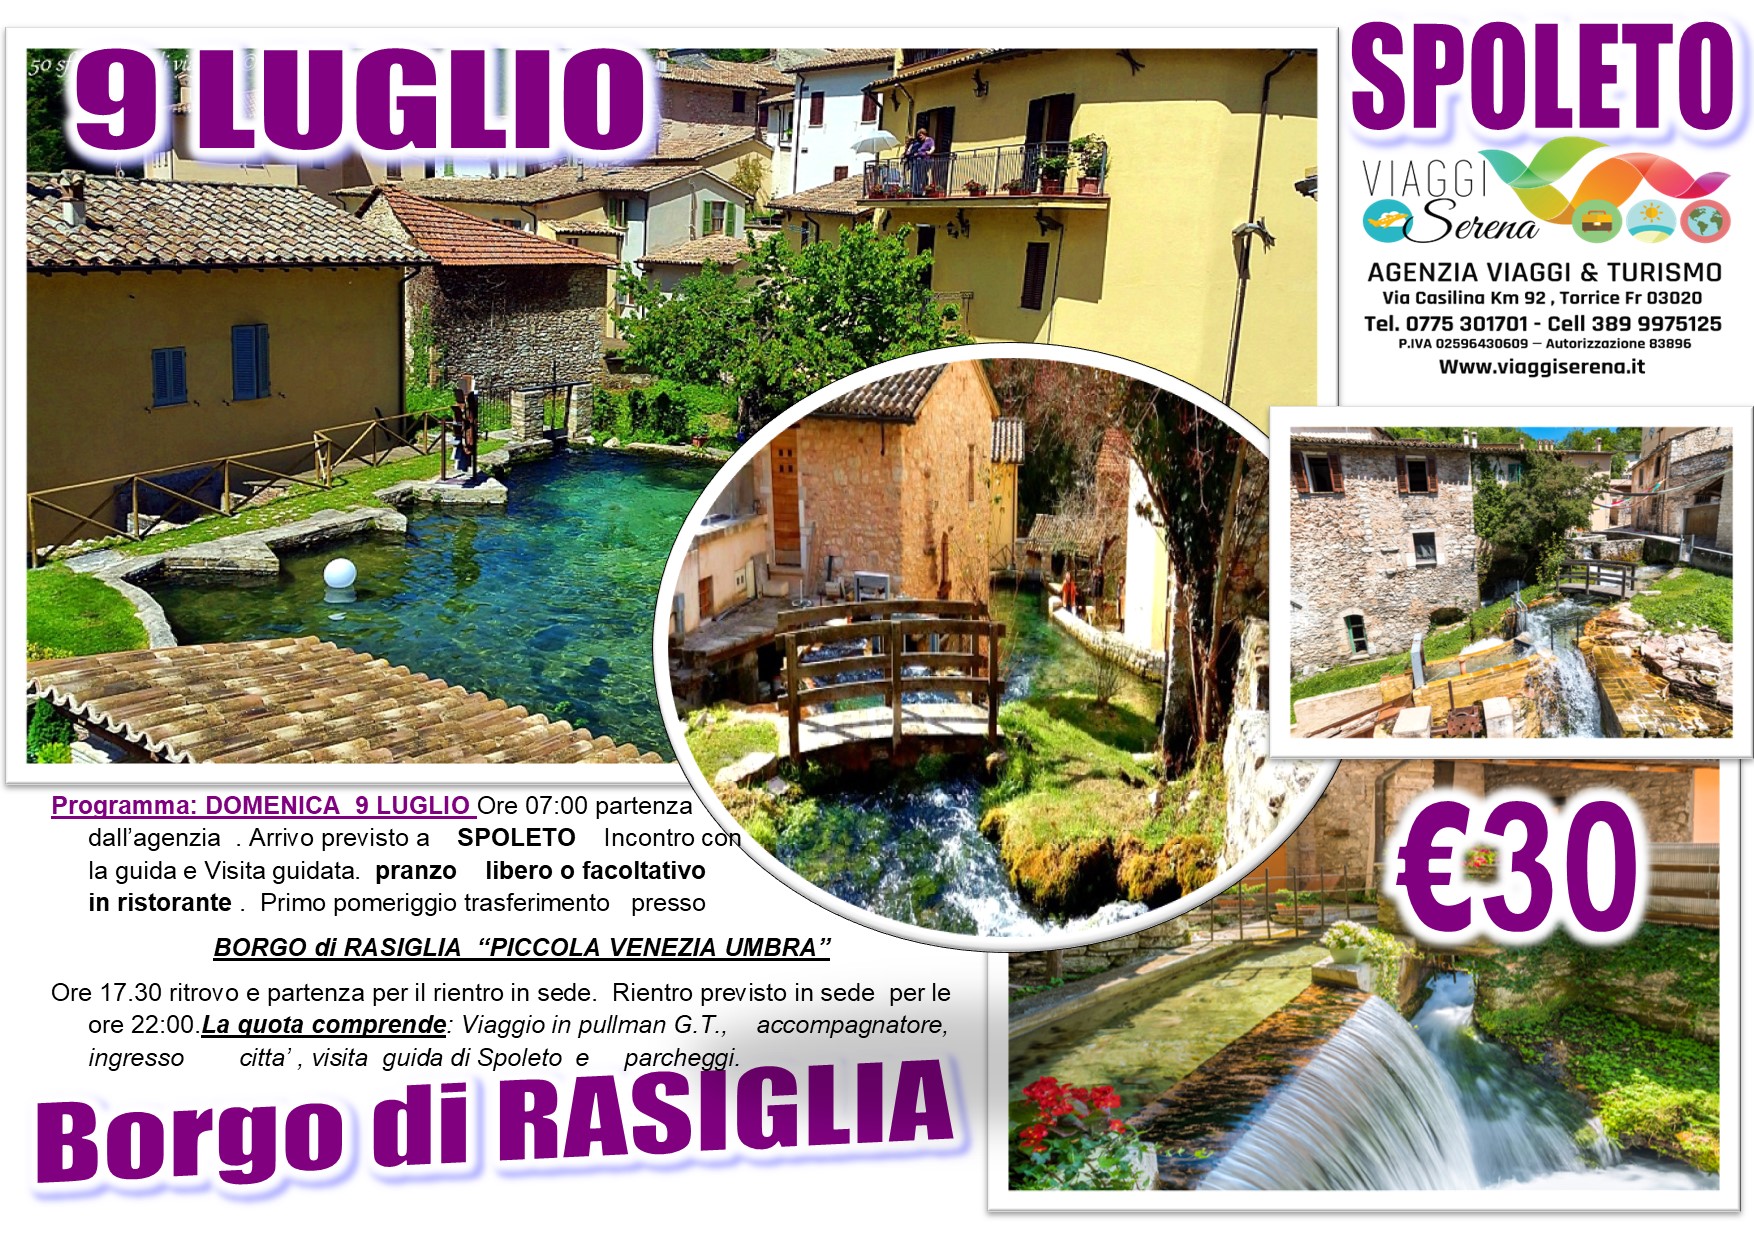 Viaggi di Gruppo: Spoleto & Borgo di Rasiglia “la piccola Venezia Umbra” 9 Luglio € 30,00